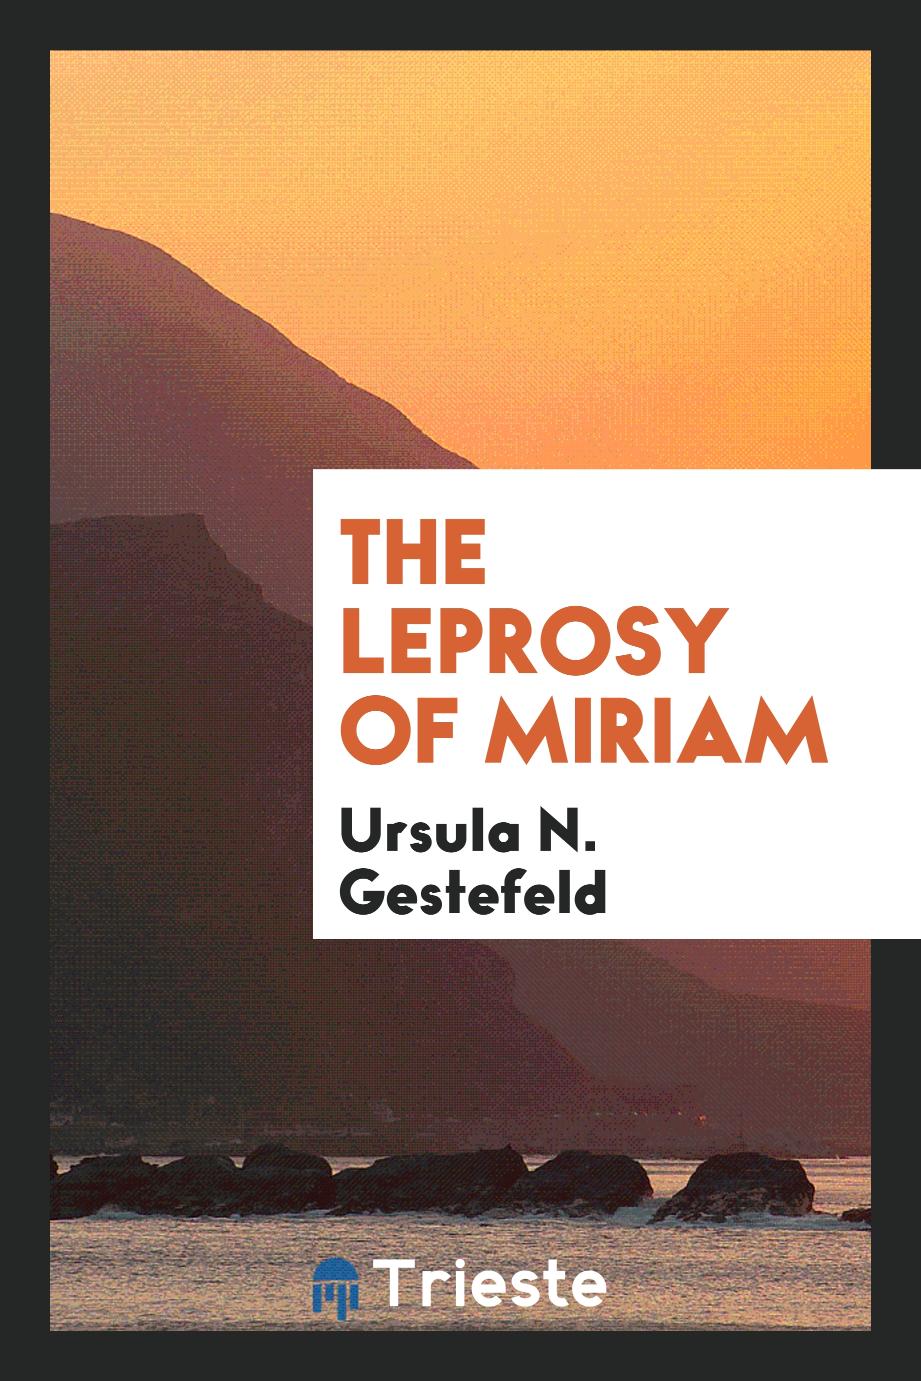 The leprosy of Miriam